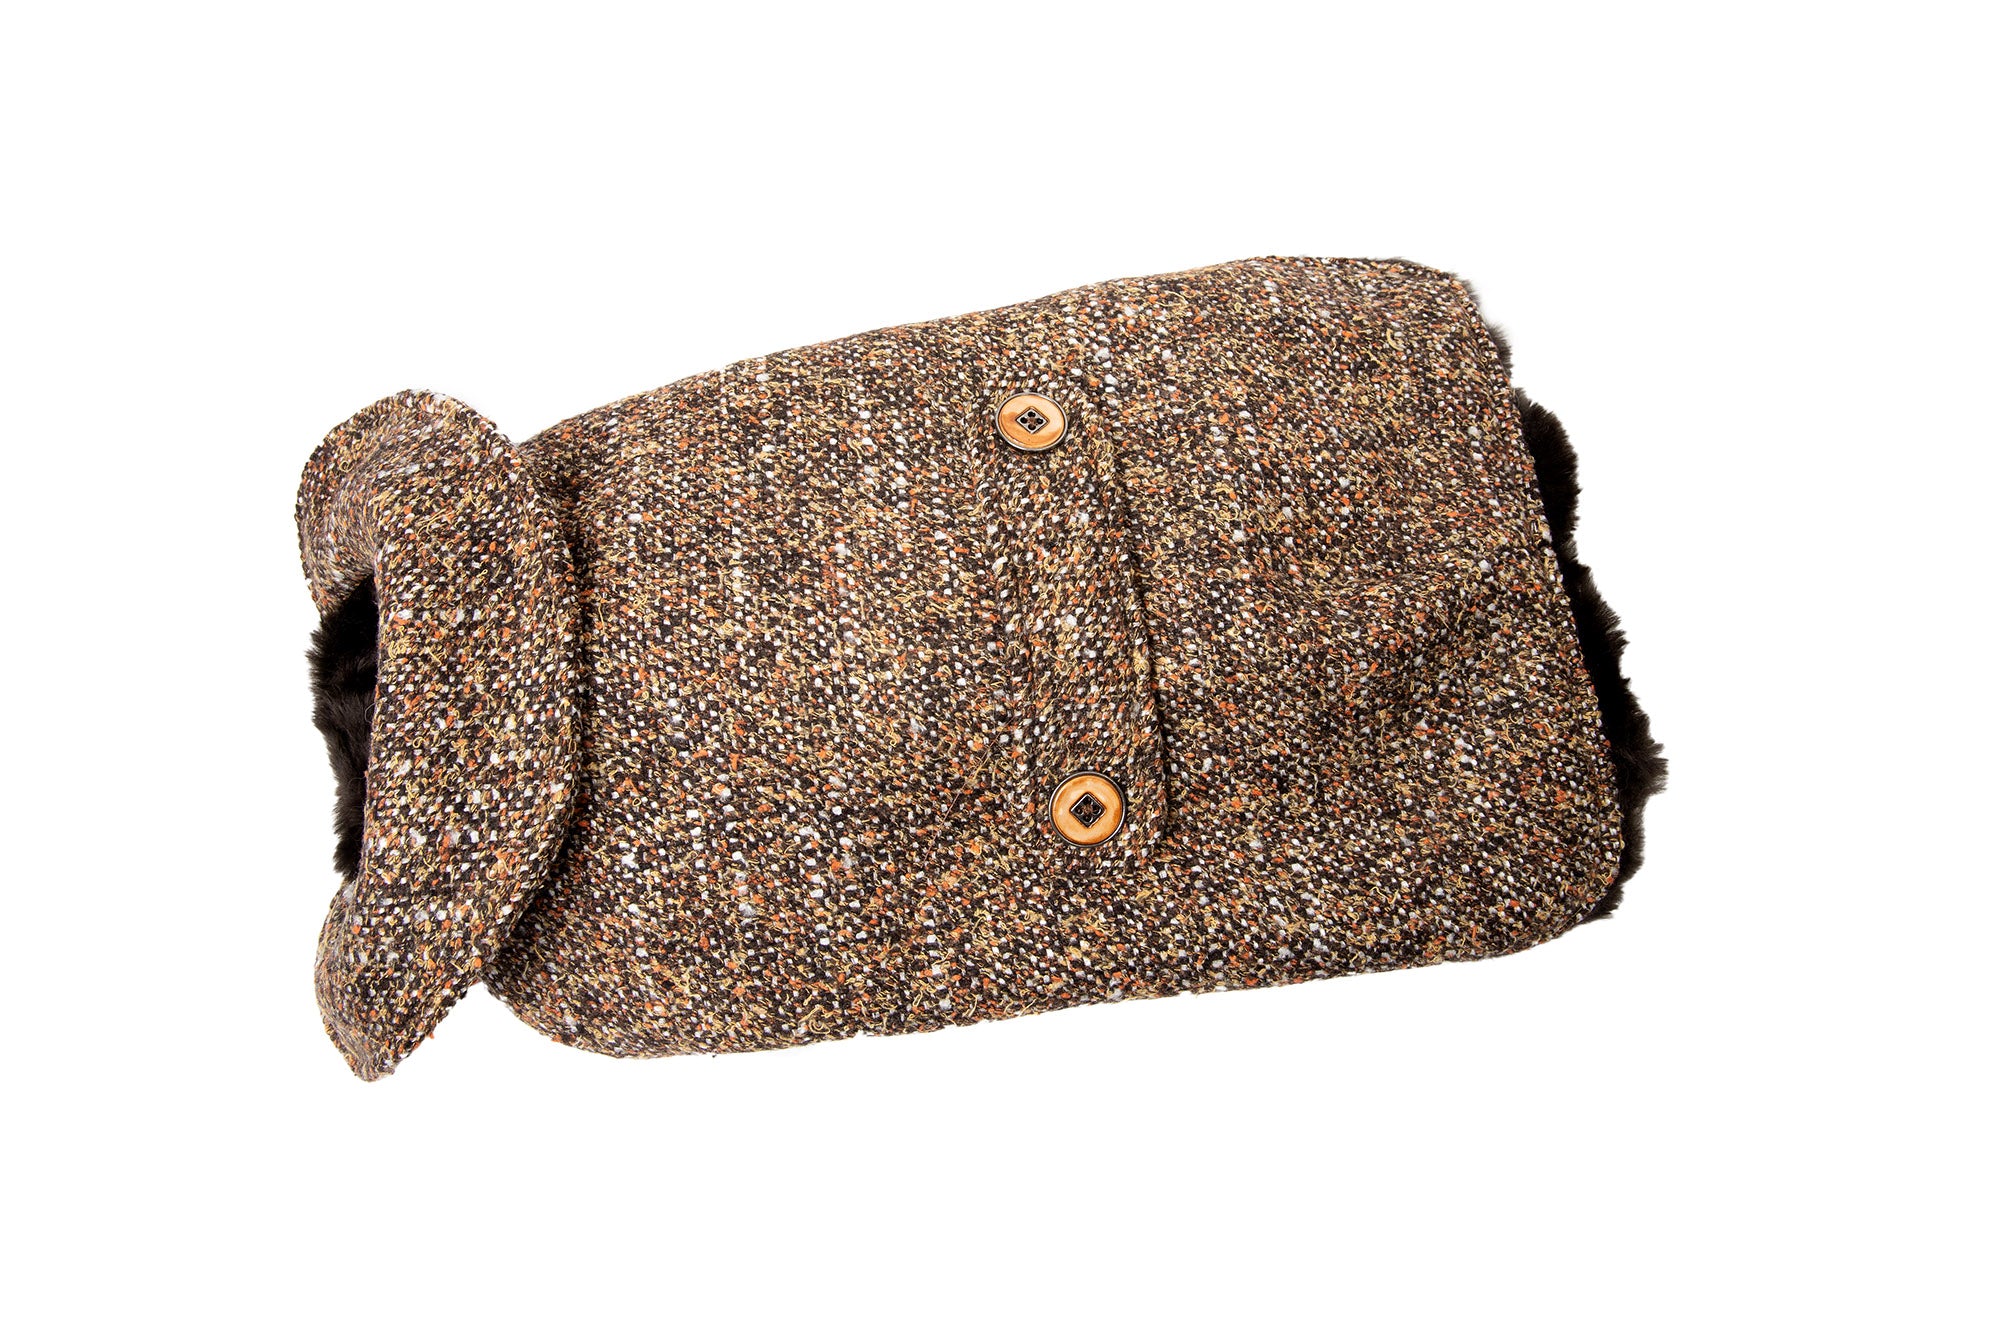 Dog Carrier - Winter - Brown Wool - Tweed Carriers